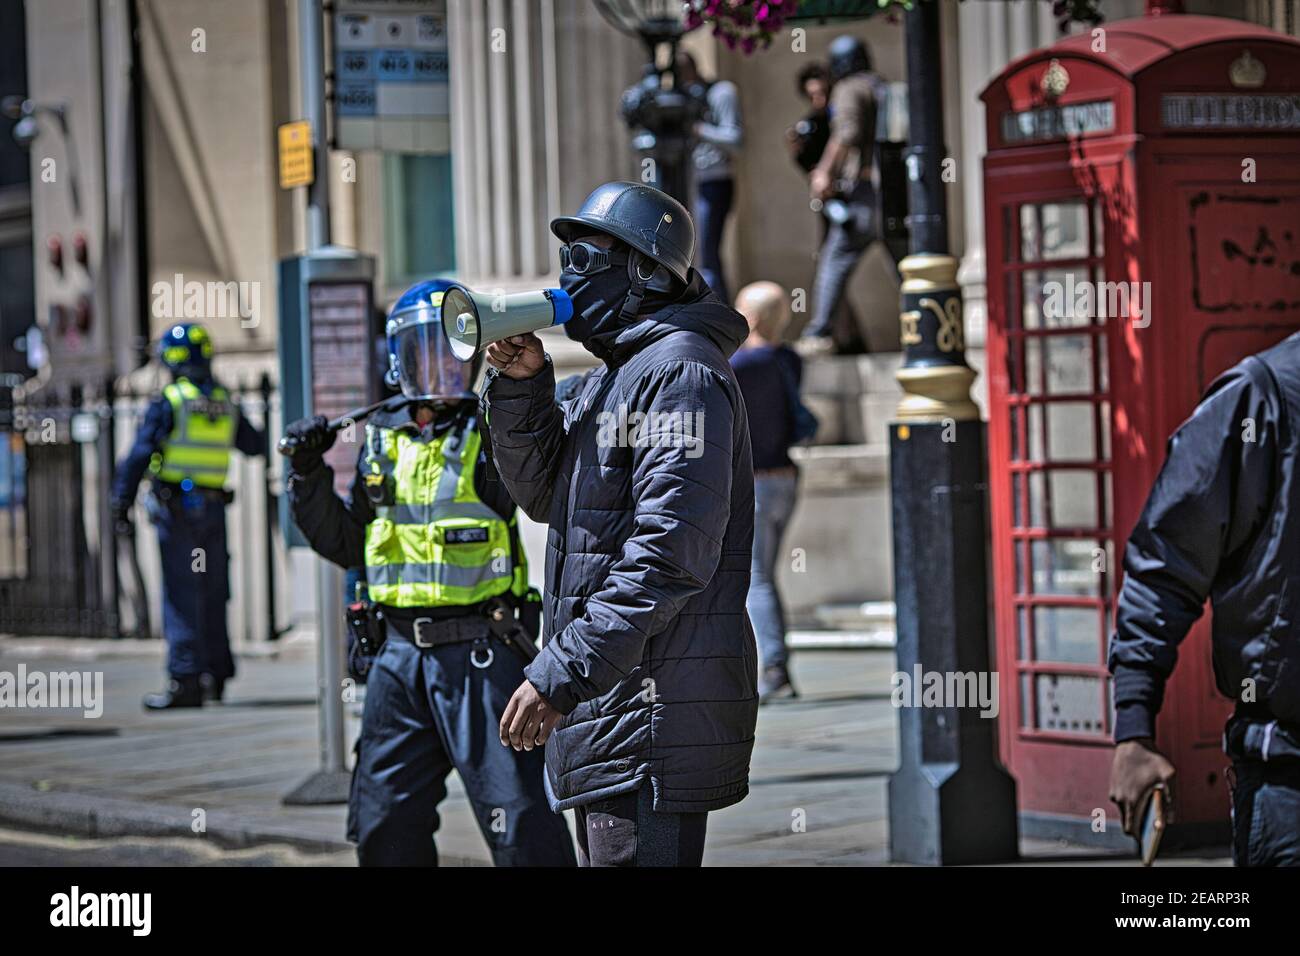 Londra 13 giugno 2020 i manifestanti BLM si scontrano con i gruppi di estrema destra e la polizia a Trafalgar Square Foto Stock